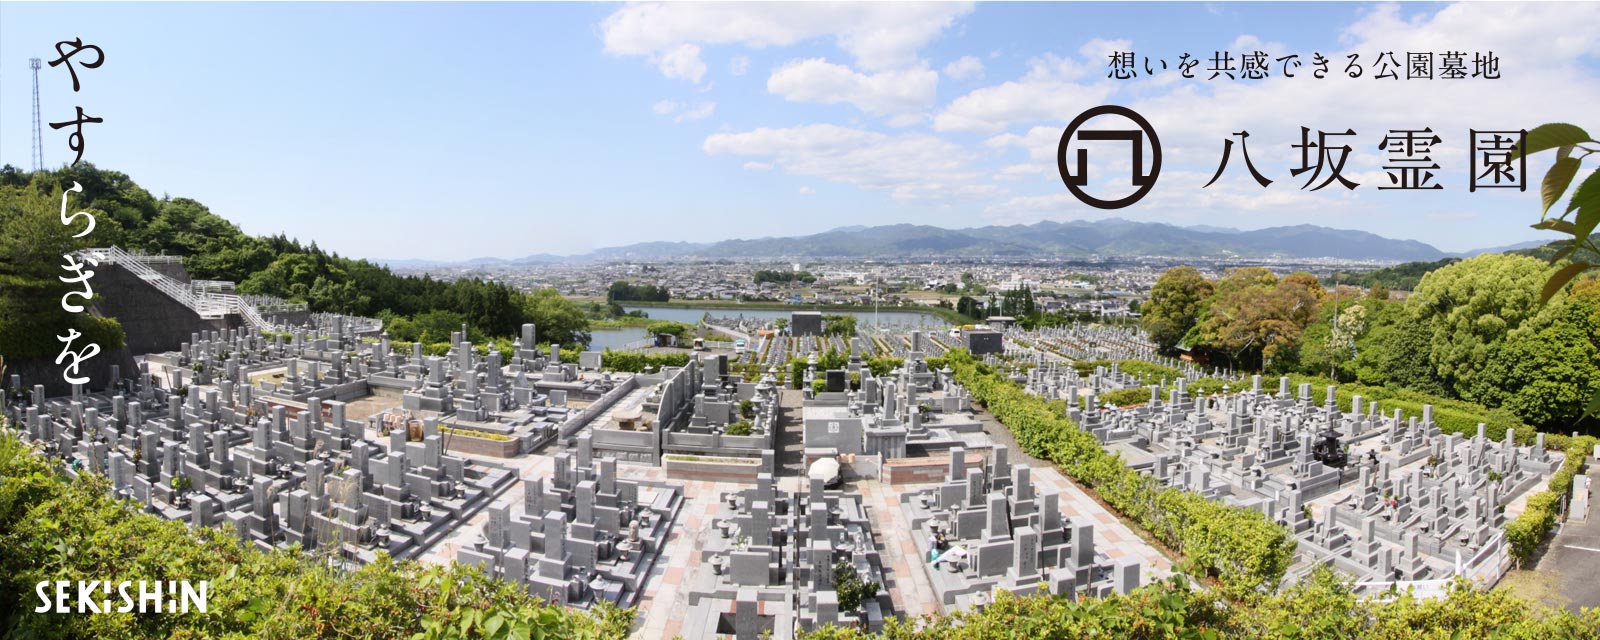 >四国最大級の公園墓地 「八坂霊園」